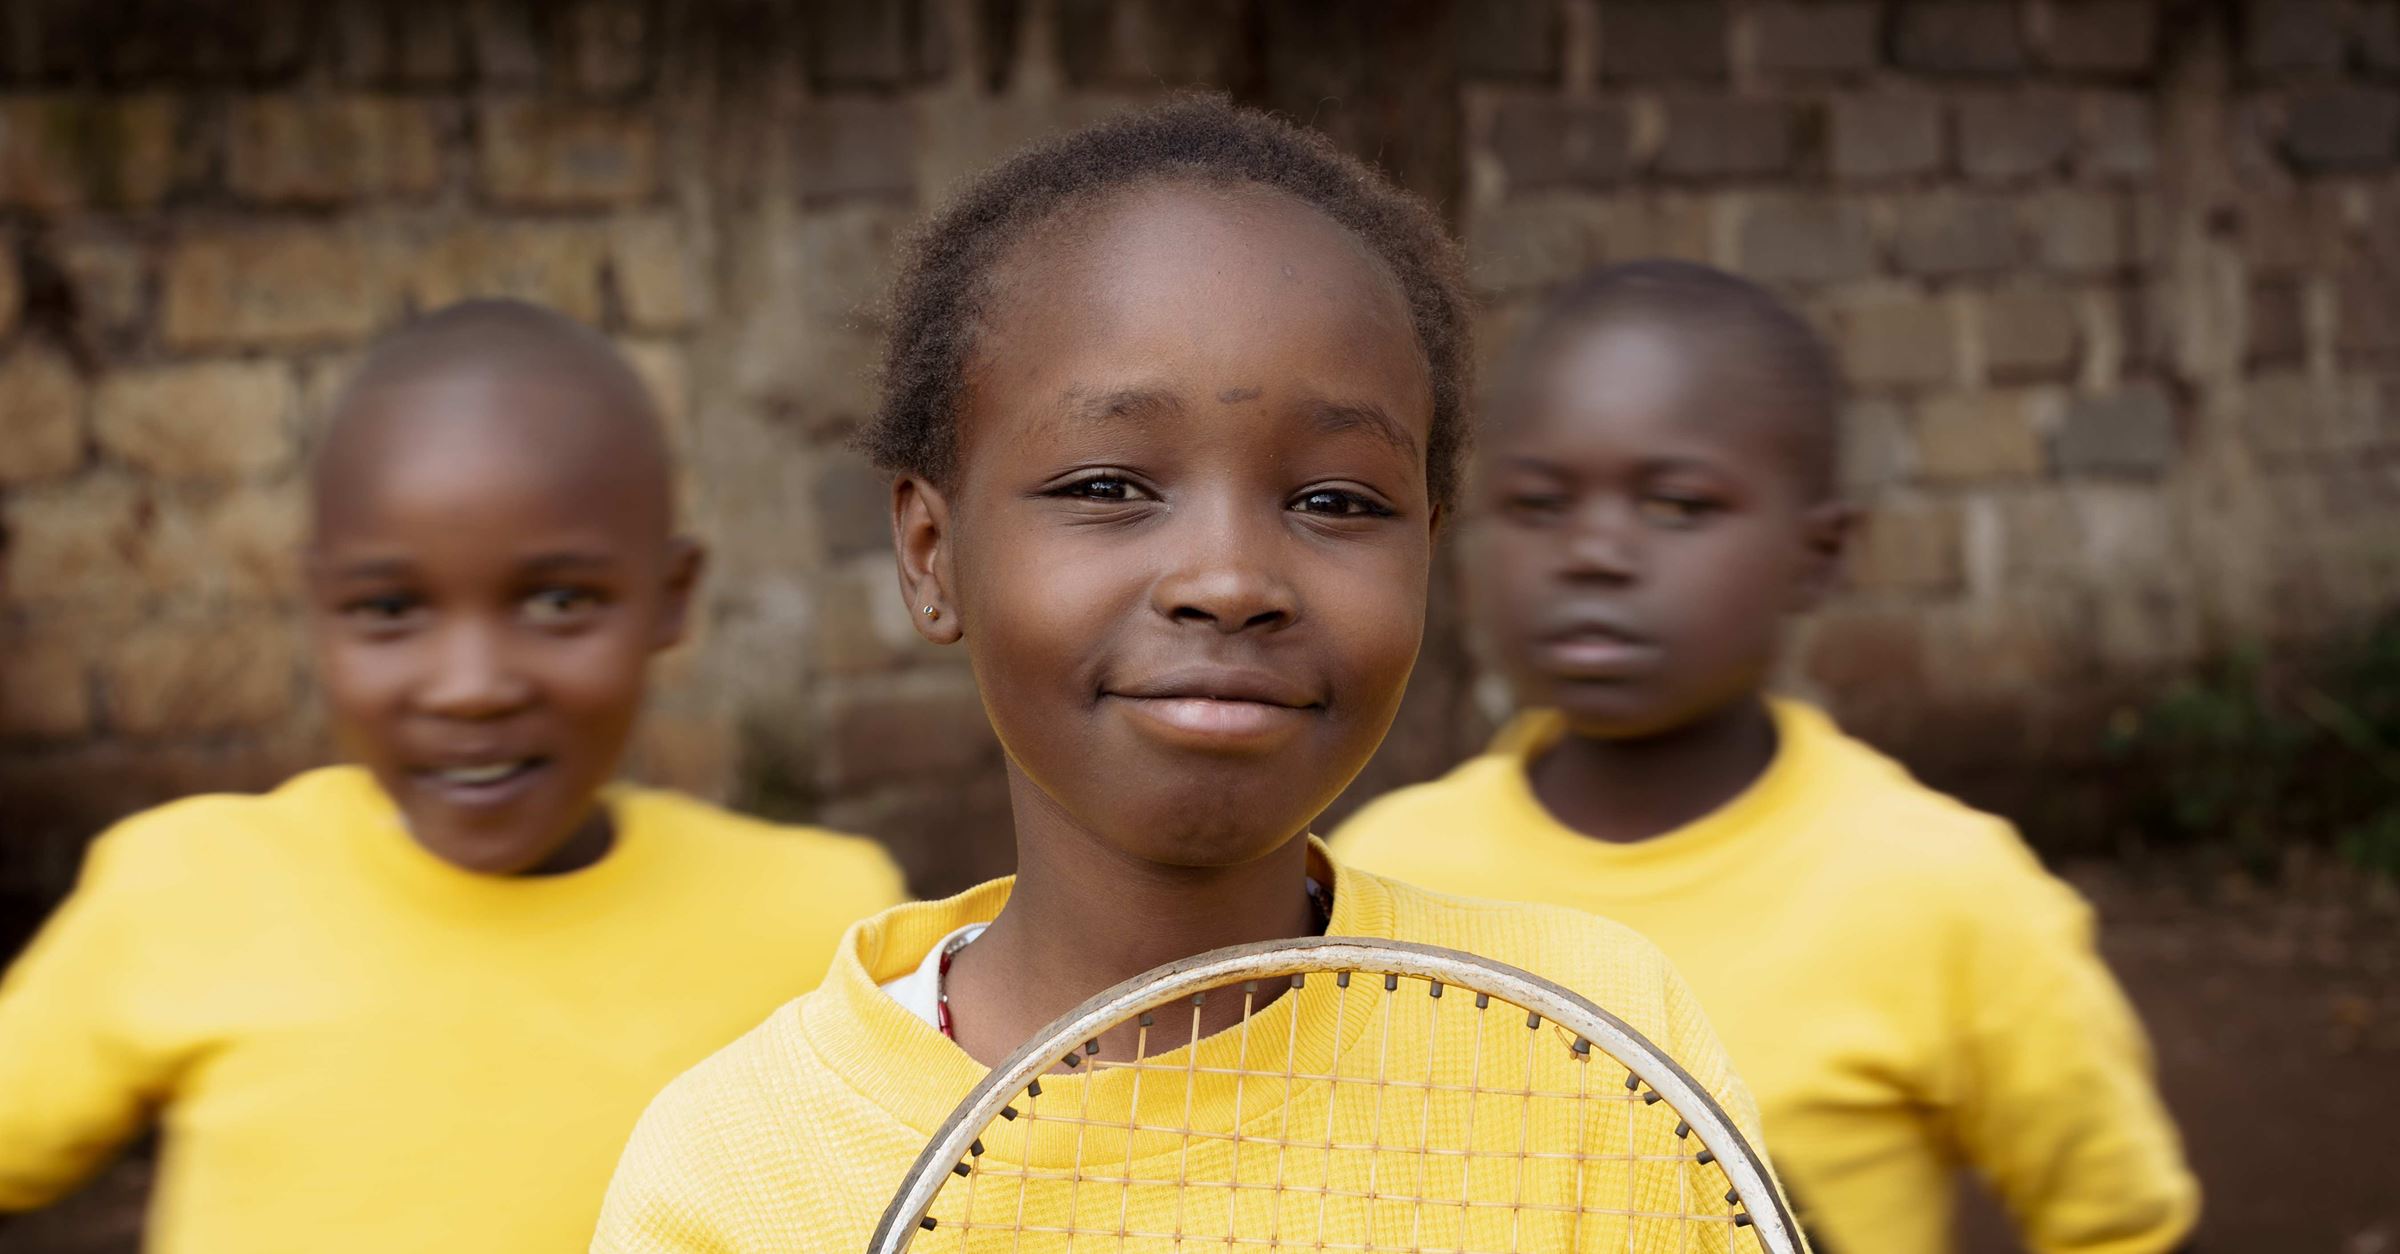 Ein Mädchen aus Kenia im gelben T-Shirt mit Tennisschläger. (Quelle: Lars Heidrich)